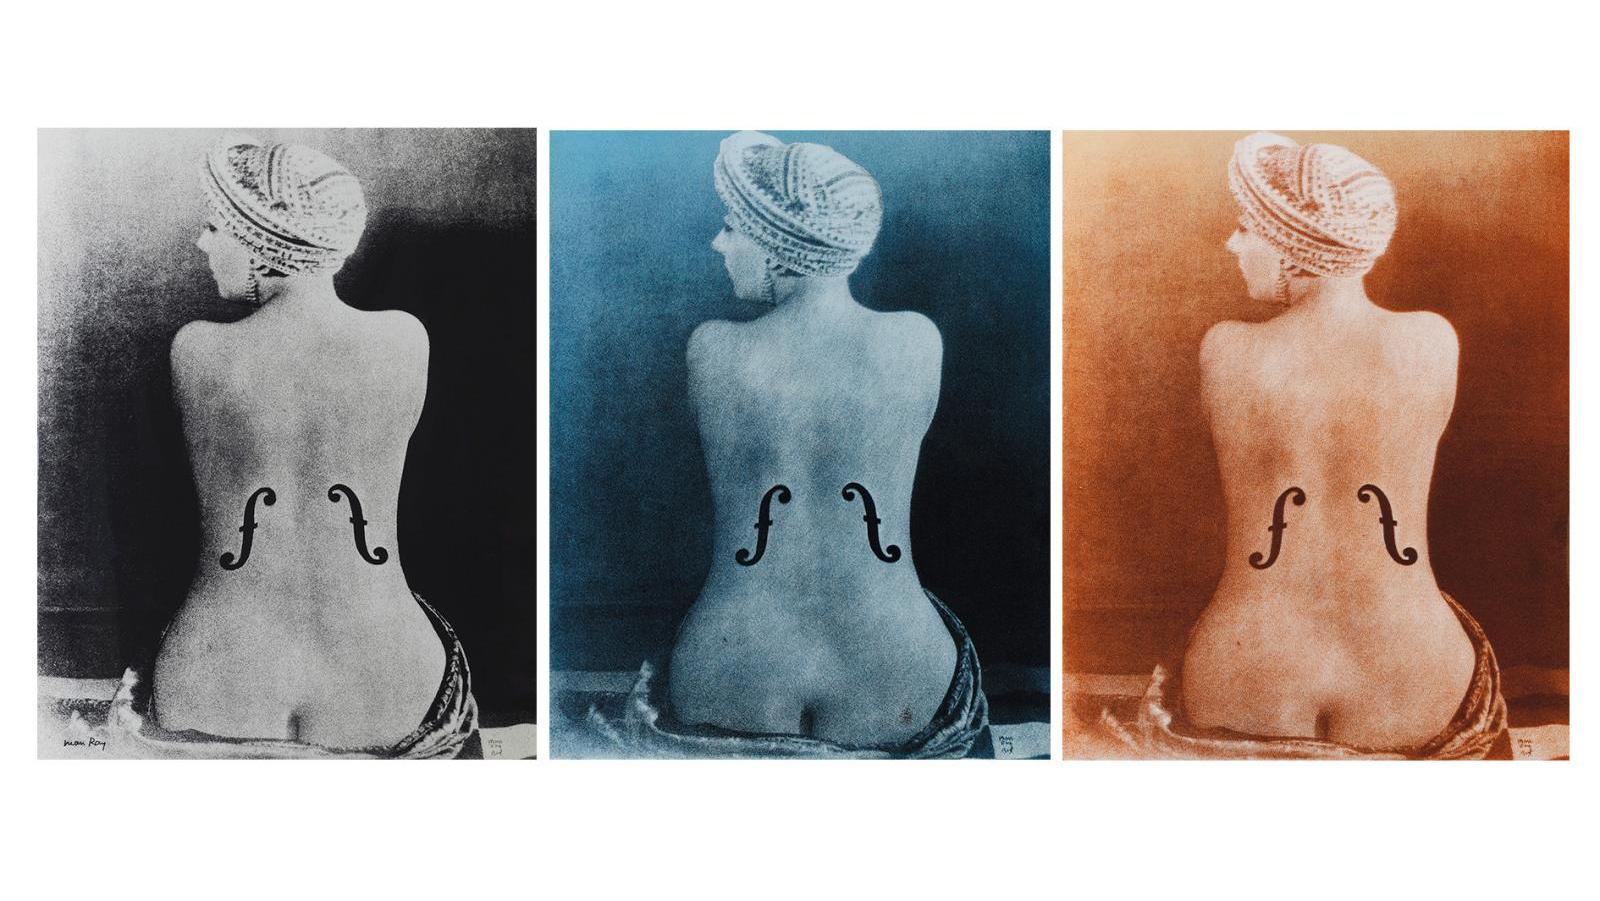 Man Ray (1890-1976), Le Violon d’Ingres, 1924, tryptique unique vers 1970, sérigraphies... Man Ray, Trio pour Violon d’Ingres